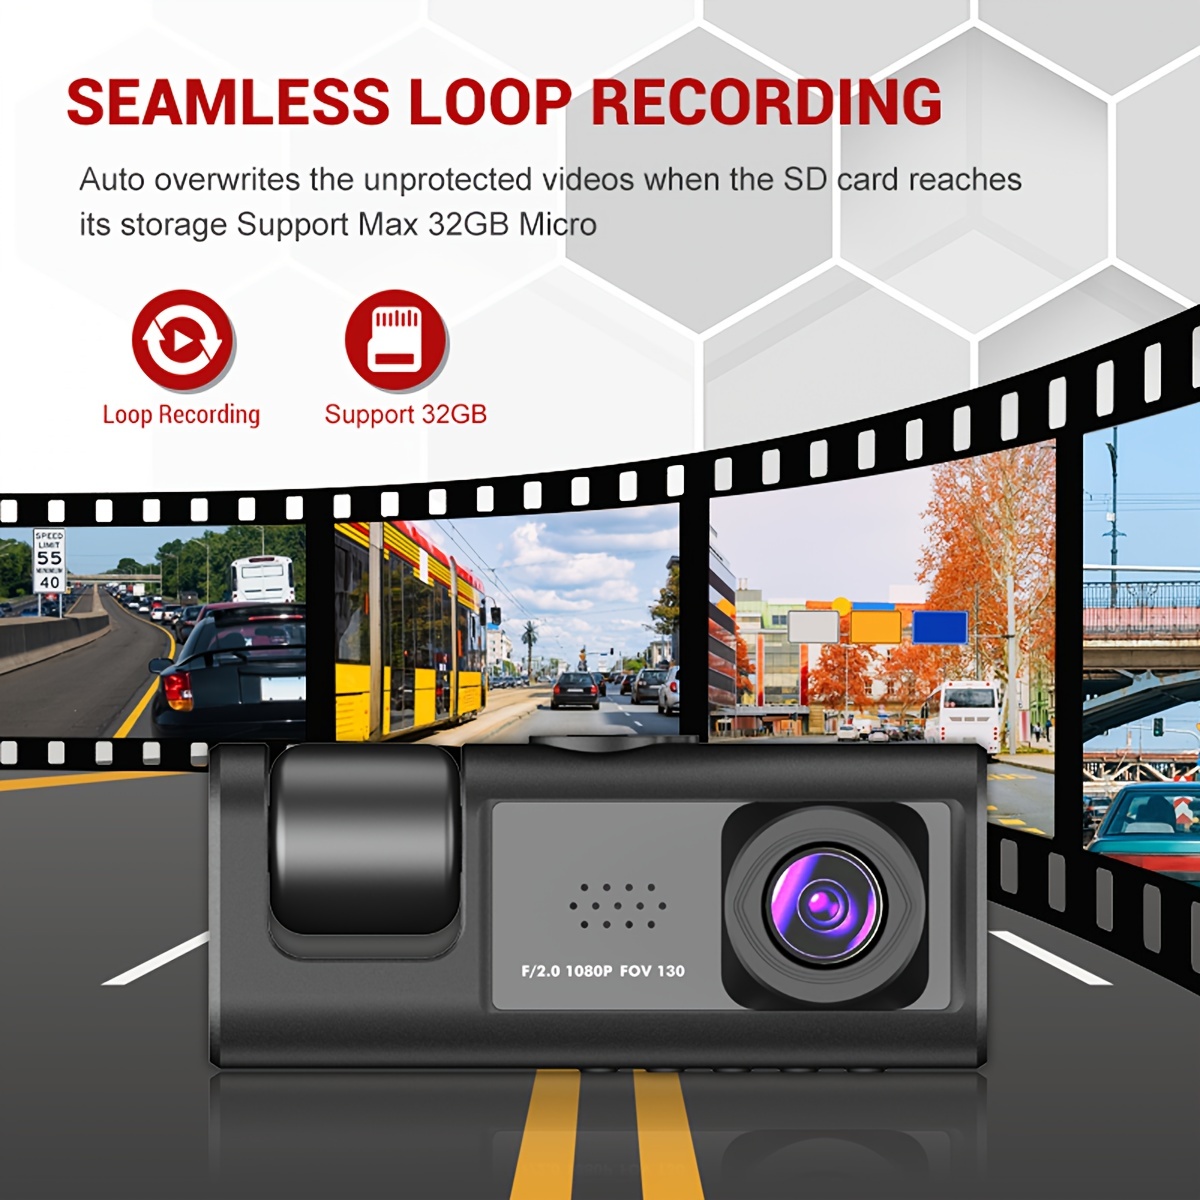 Suokom Dashcam 3 canaux Dash Cam avant et arrière à l'intérieur 1080P  caméra de tableau de bord pour voitures Dashcam caméra de voiture à trois  voies avec enregistrement en boucle de vision